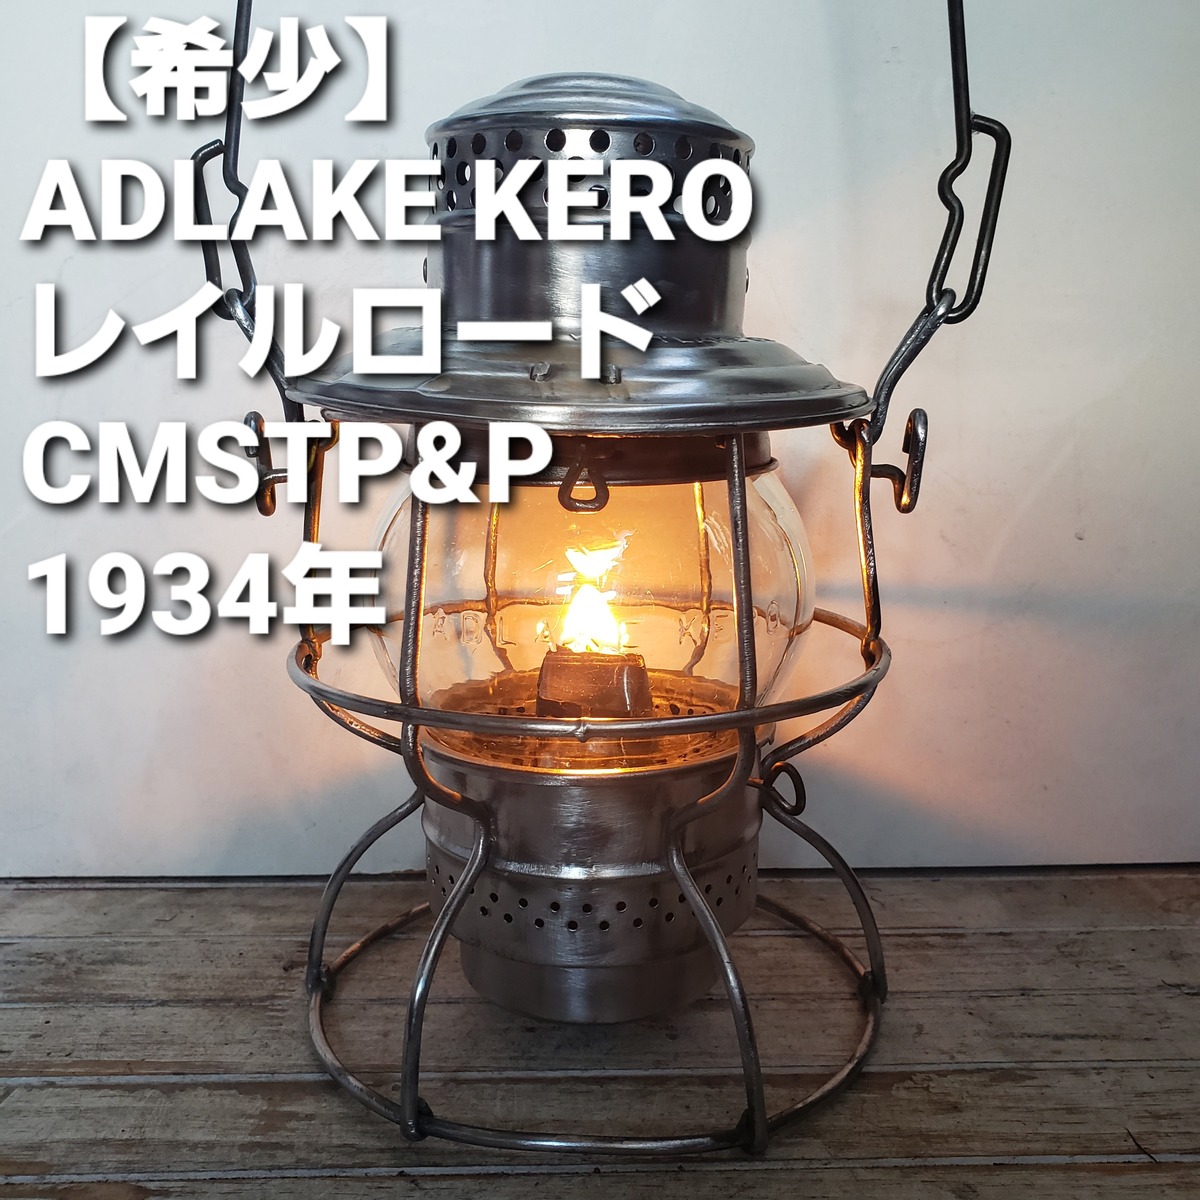 アドレイク ケロ レイルロードランタン CMSTP&P 1934年 ADLAKE | shop kato コールマン ビンテージランタン·ハンドメイド·スケートボードパーツ·ショップ